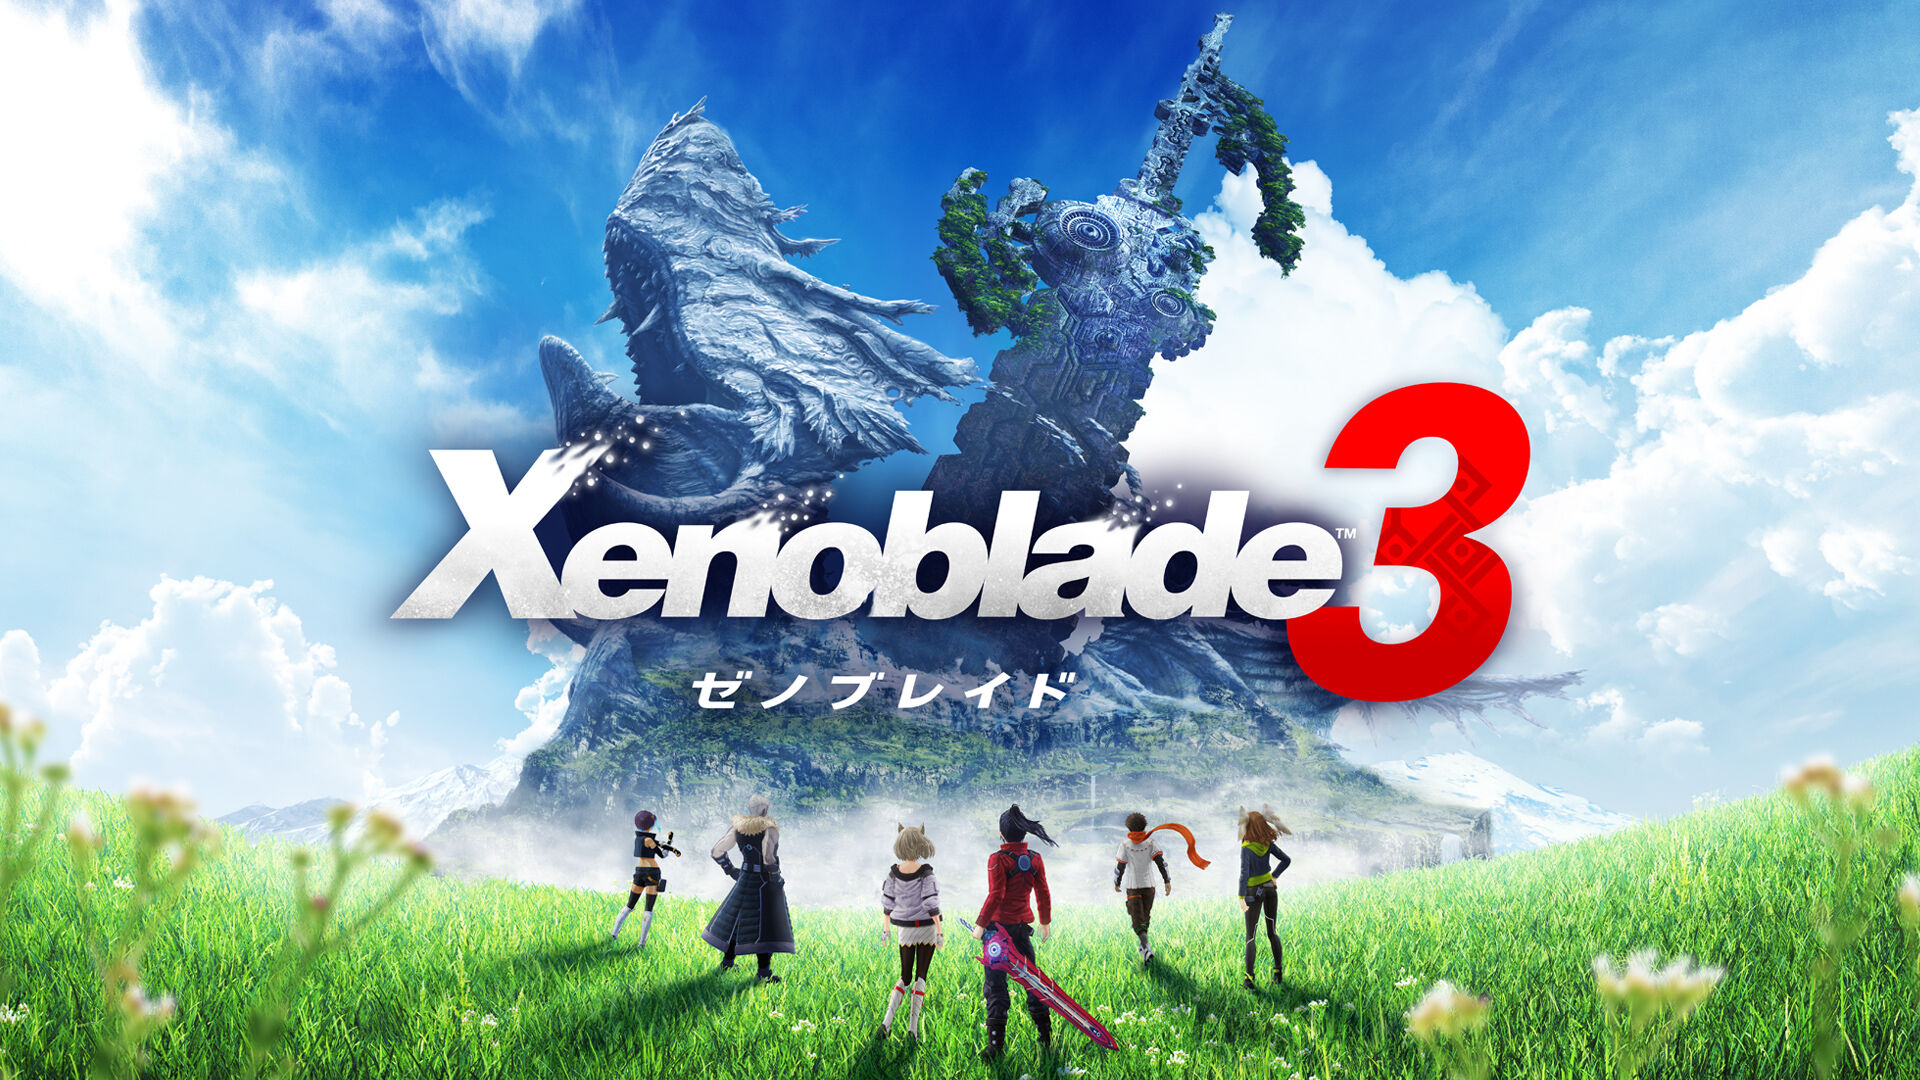 Xenoblade3 (ゼノブレイド3) ダウンロード版 | My Nintendo